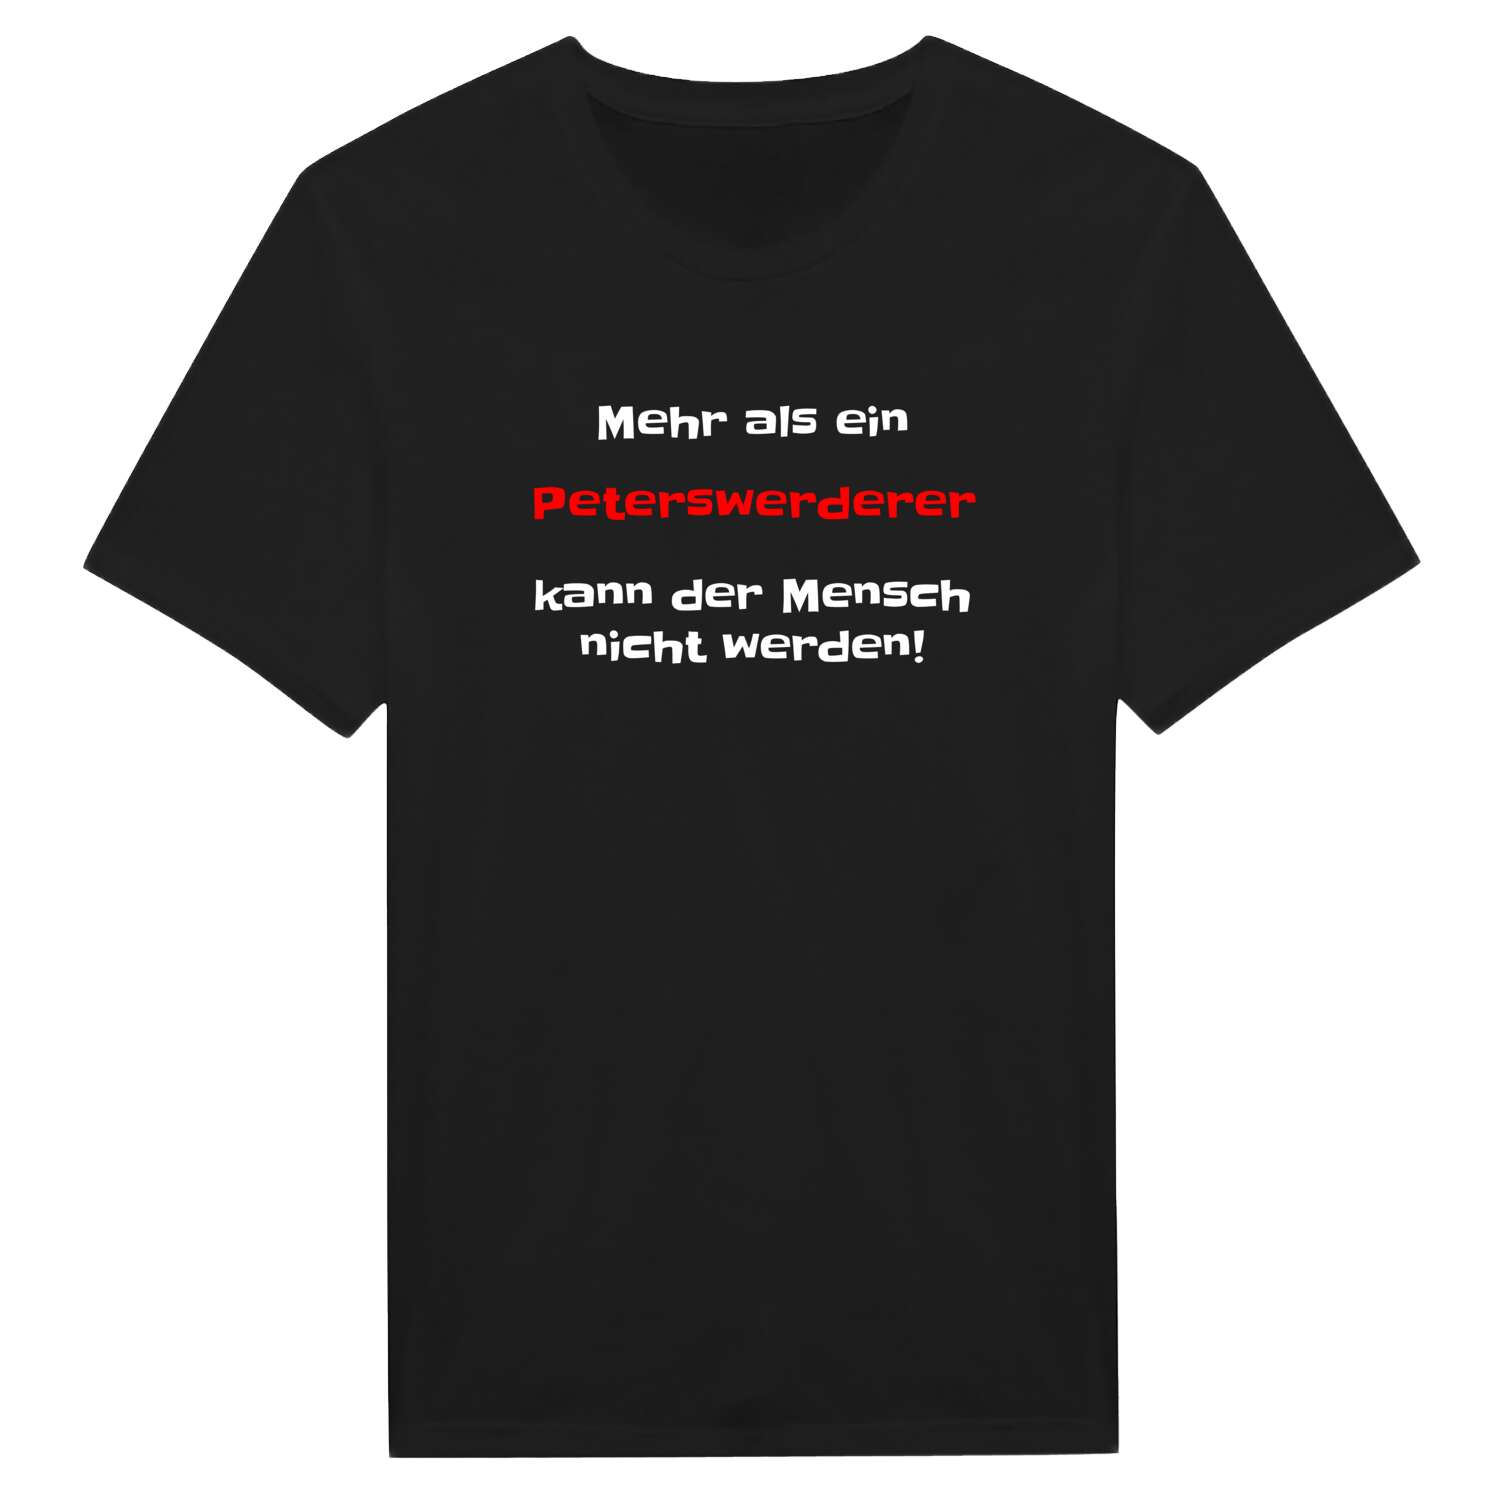 Peterswerder T-Shirt »Mehr als ein«